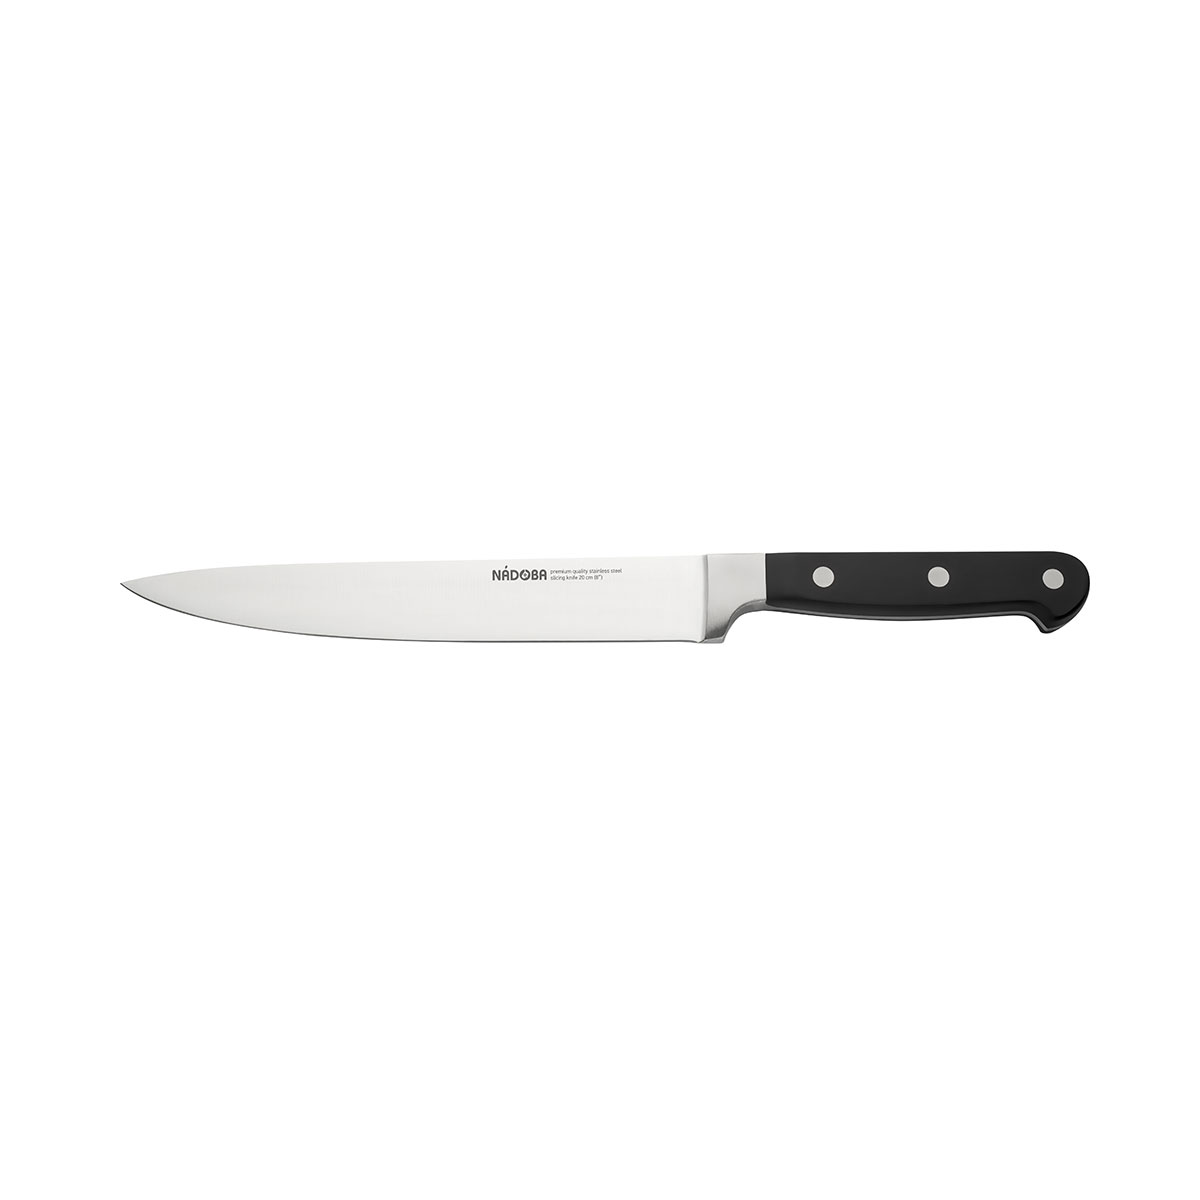 Нож Nadoba разделочный 724212, 20 см нож разделочный rondell langsax 20см нержавеющая сталь